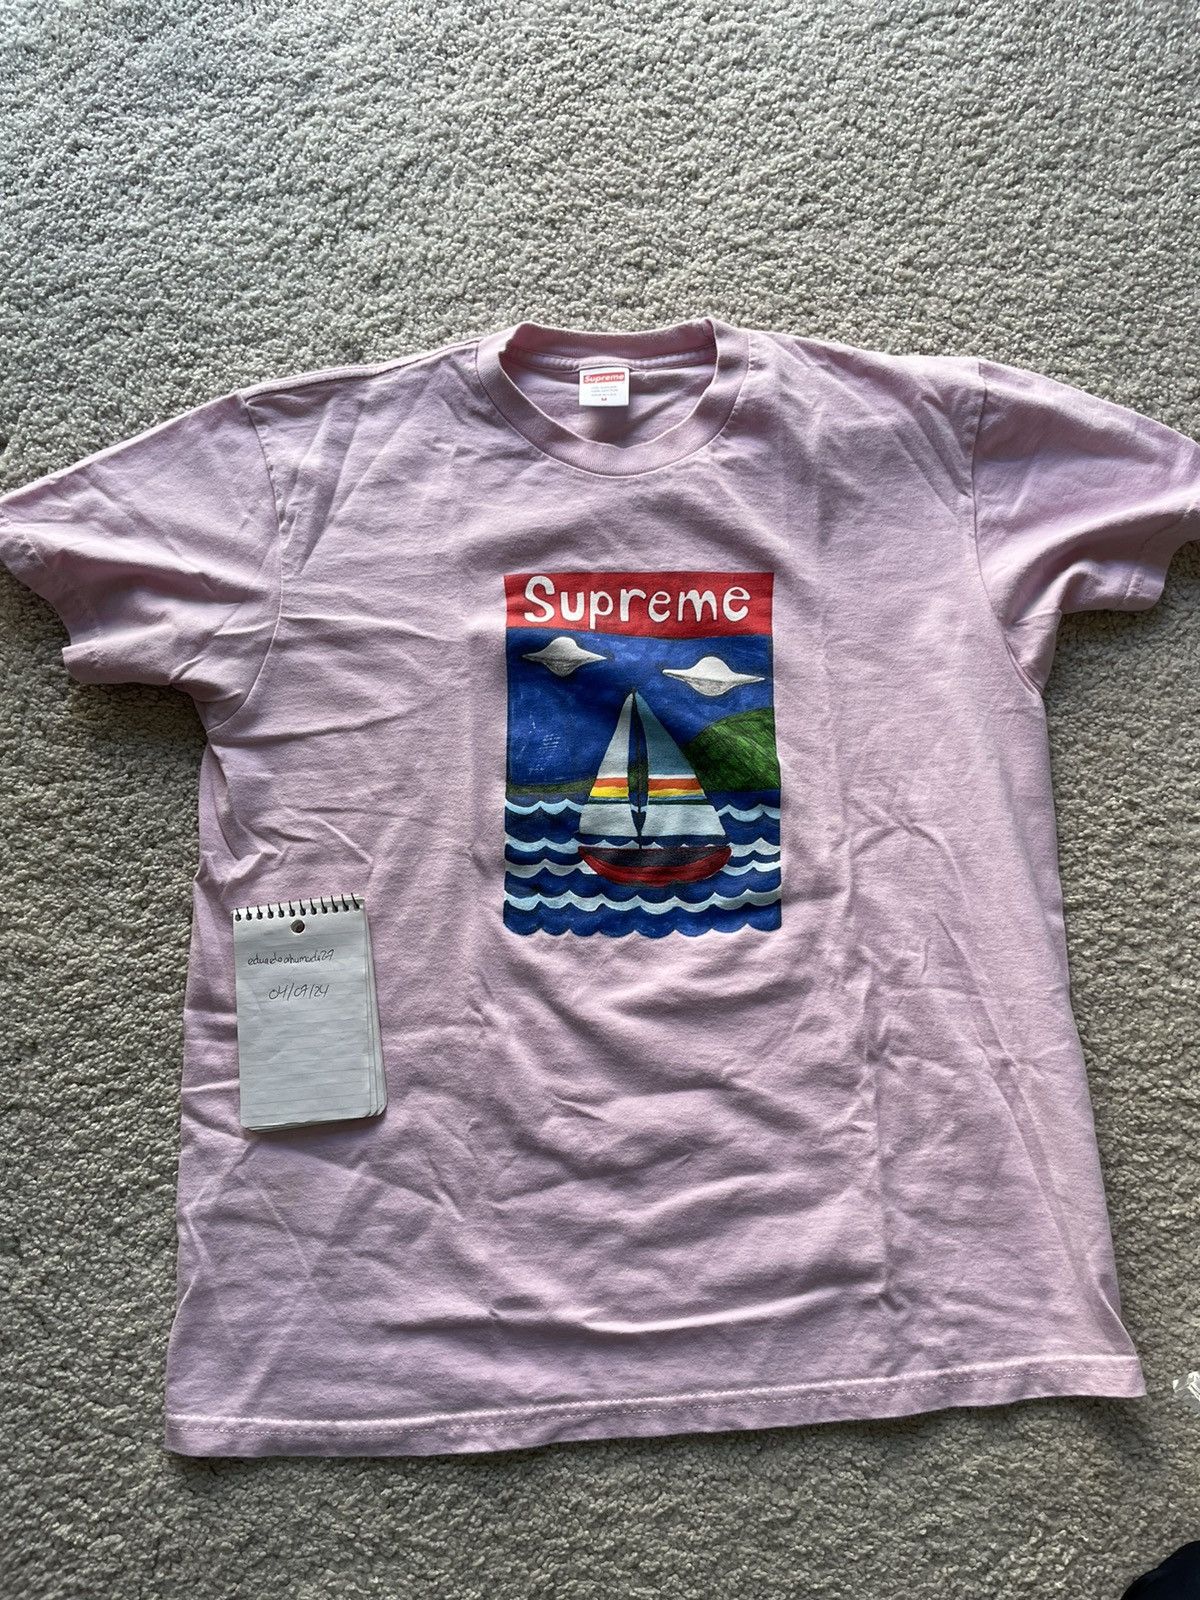 Supreme Supreme Sailboat Tee Light Pink | Grailed